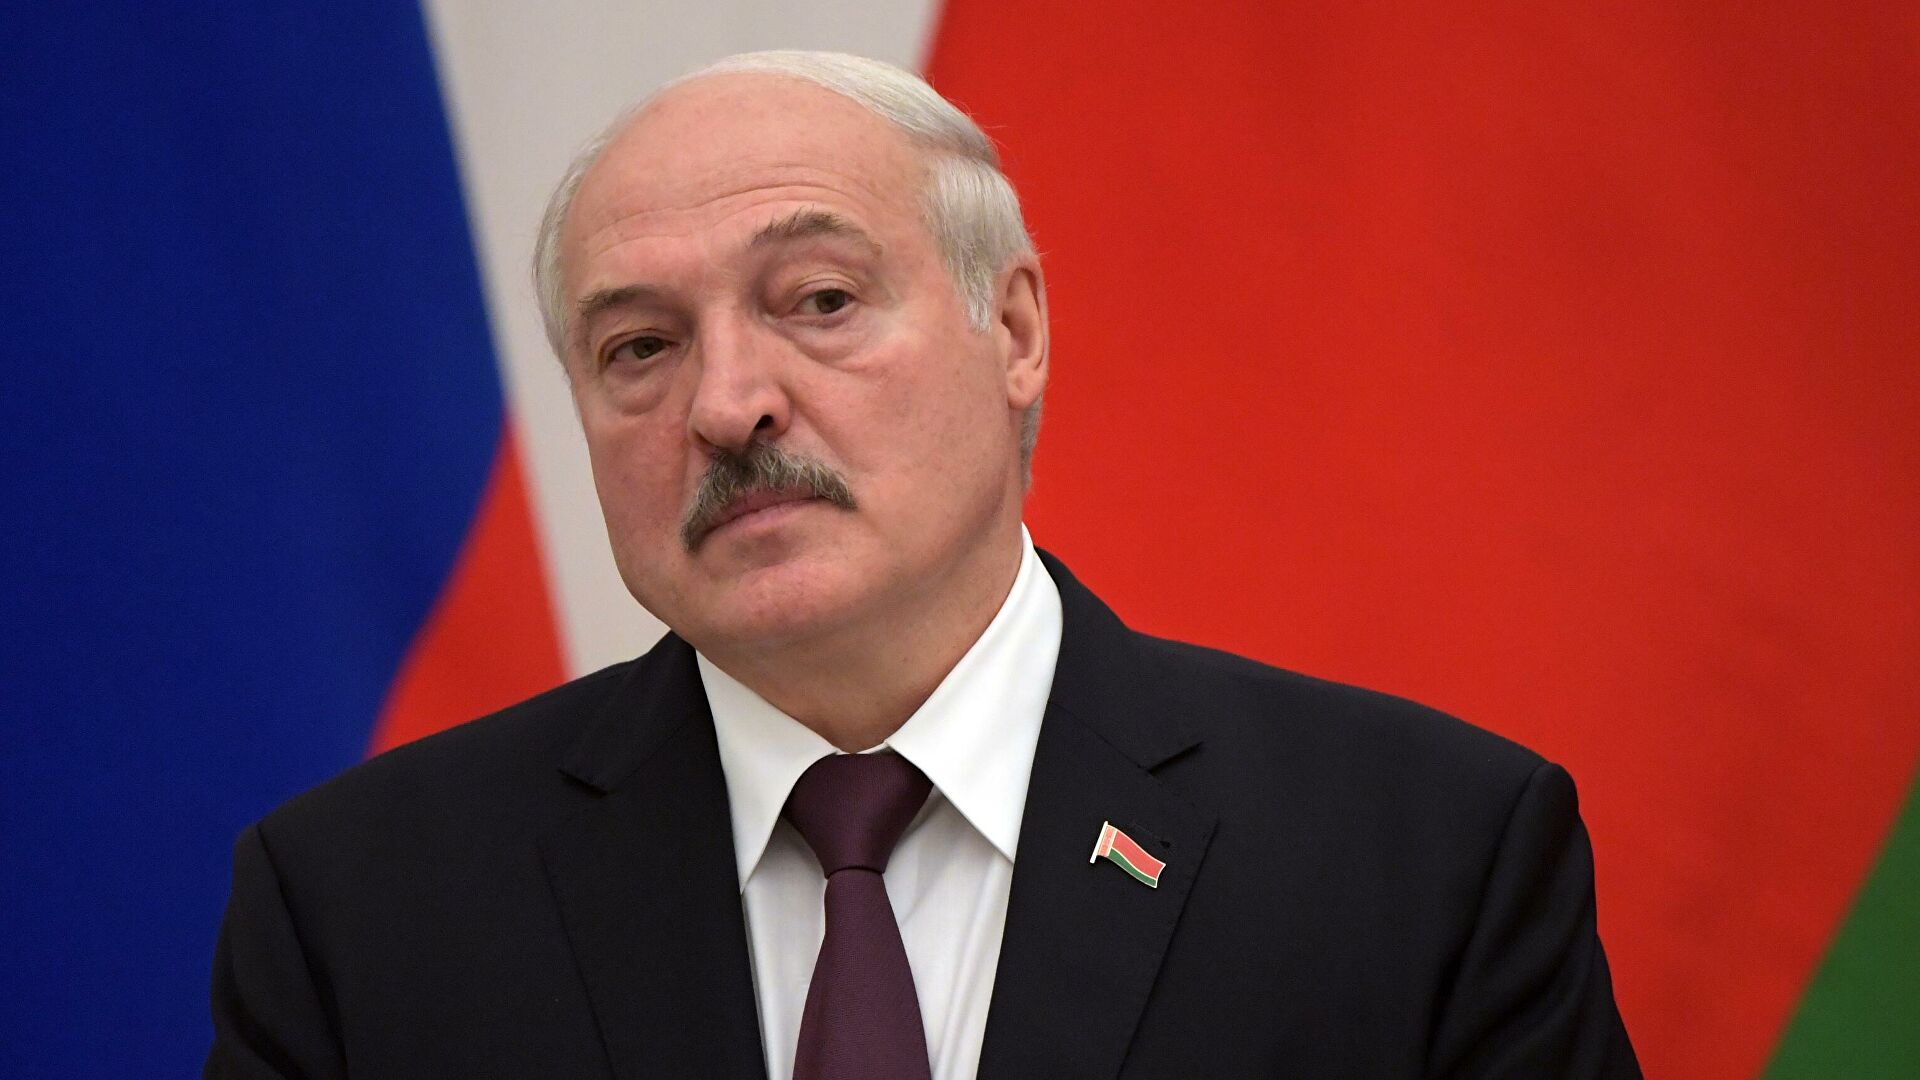 Белорусский диктатор Александр Лукашенко постоянно демонстрирует свою лояльность Путину. Фото из открытых источников